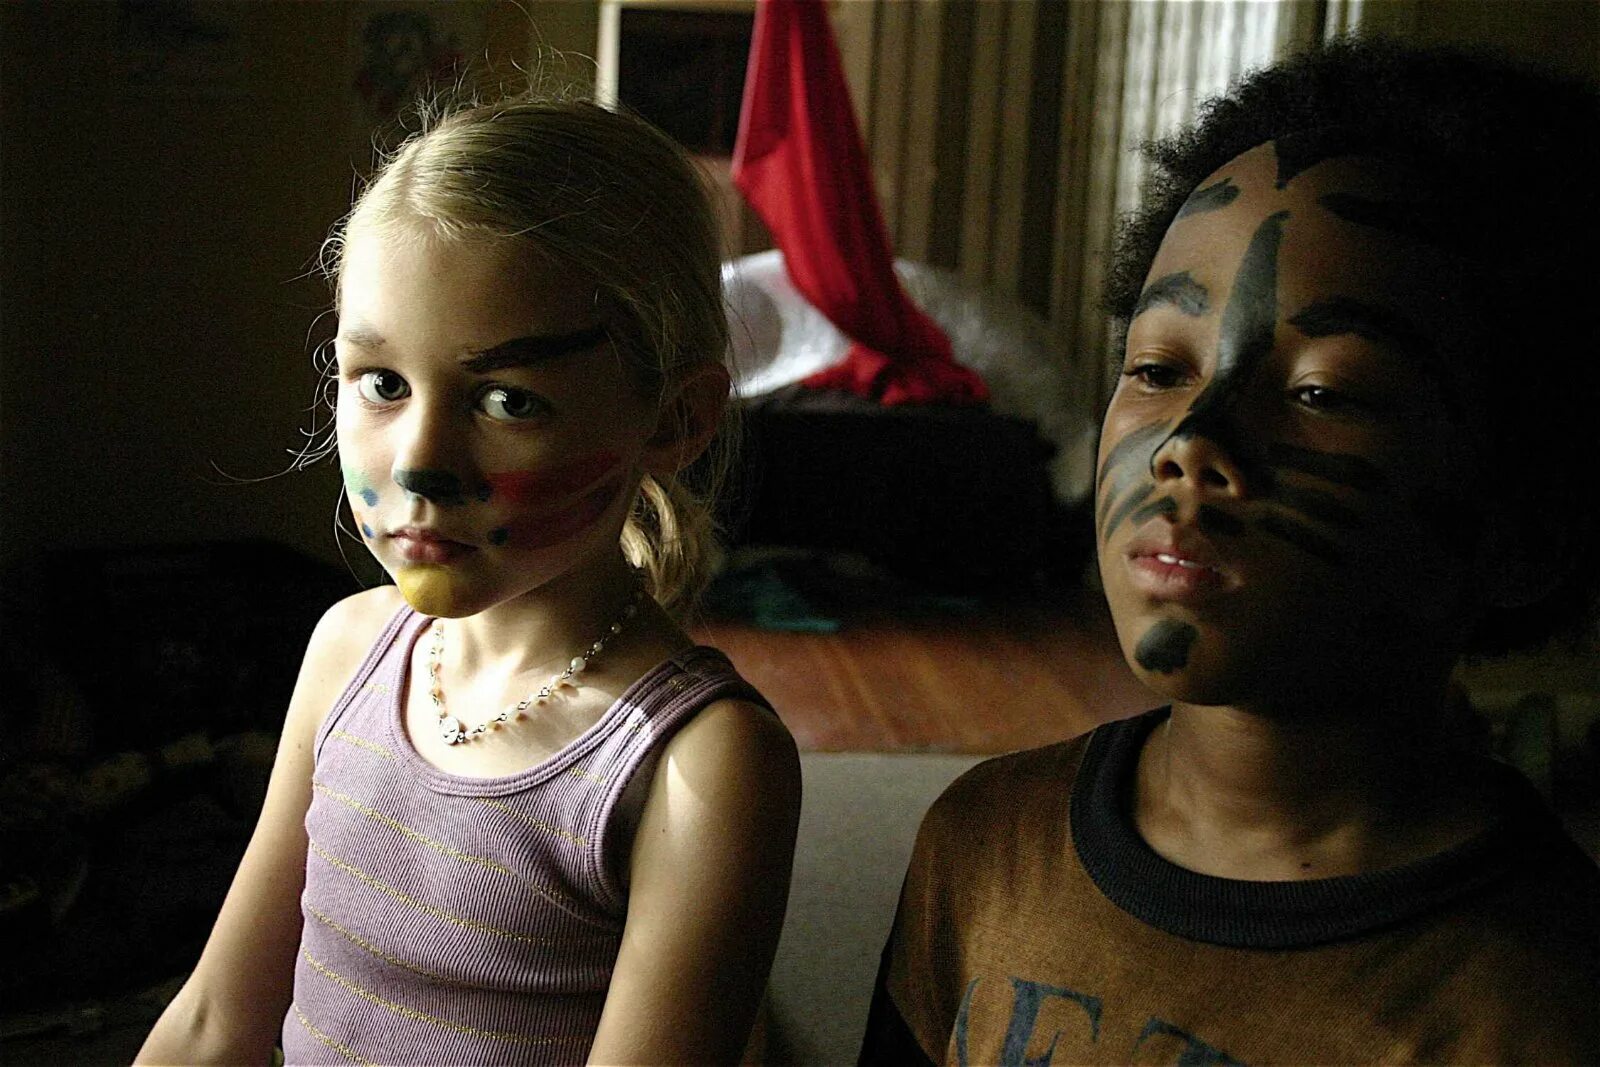 Strange children. Драма «ночные сады» (2008, Великобритания, США). Бен с Лином.